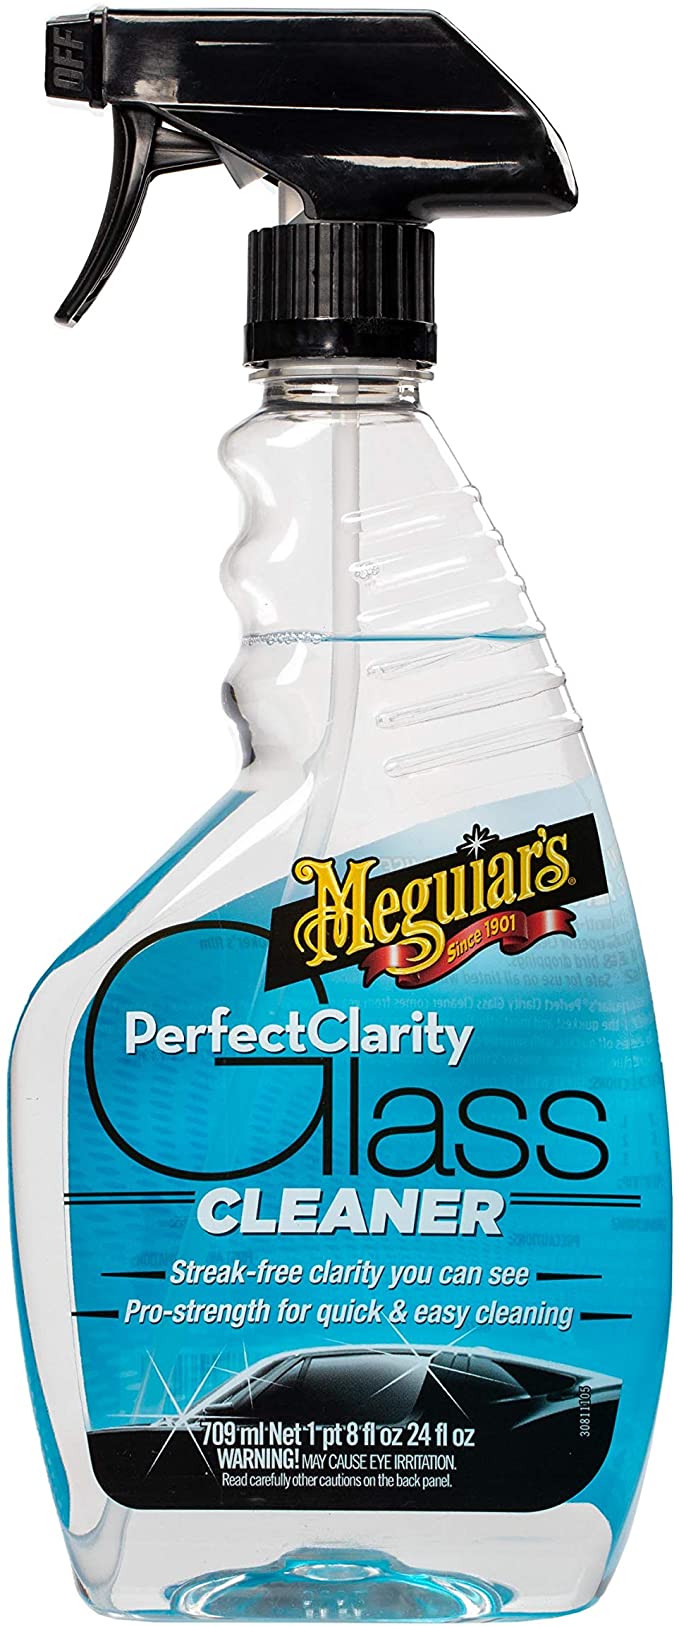 اسپری شیشه شوی مگوایرز Meguiars Perfect Clarity Glass Cleaner G8224